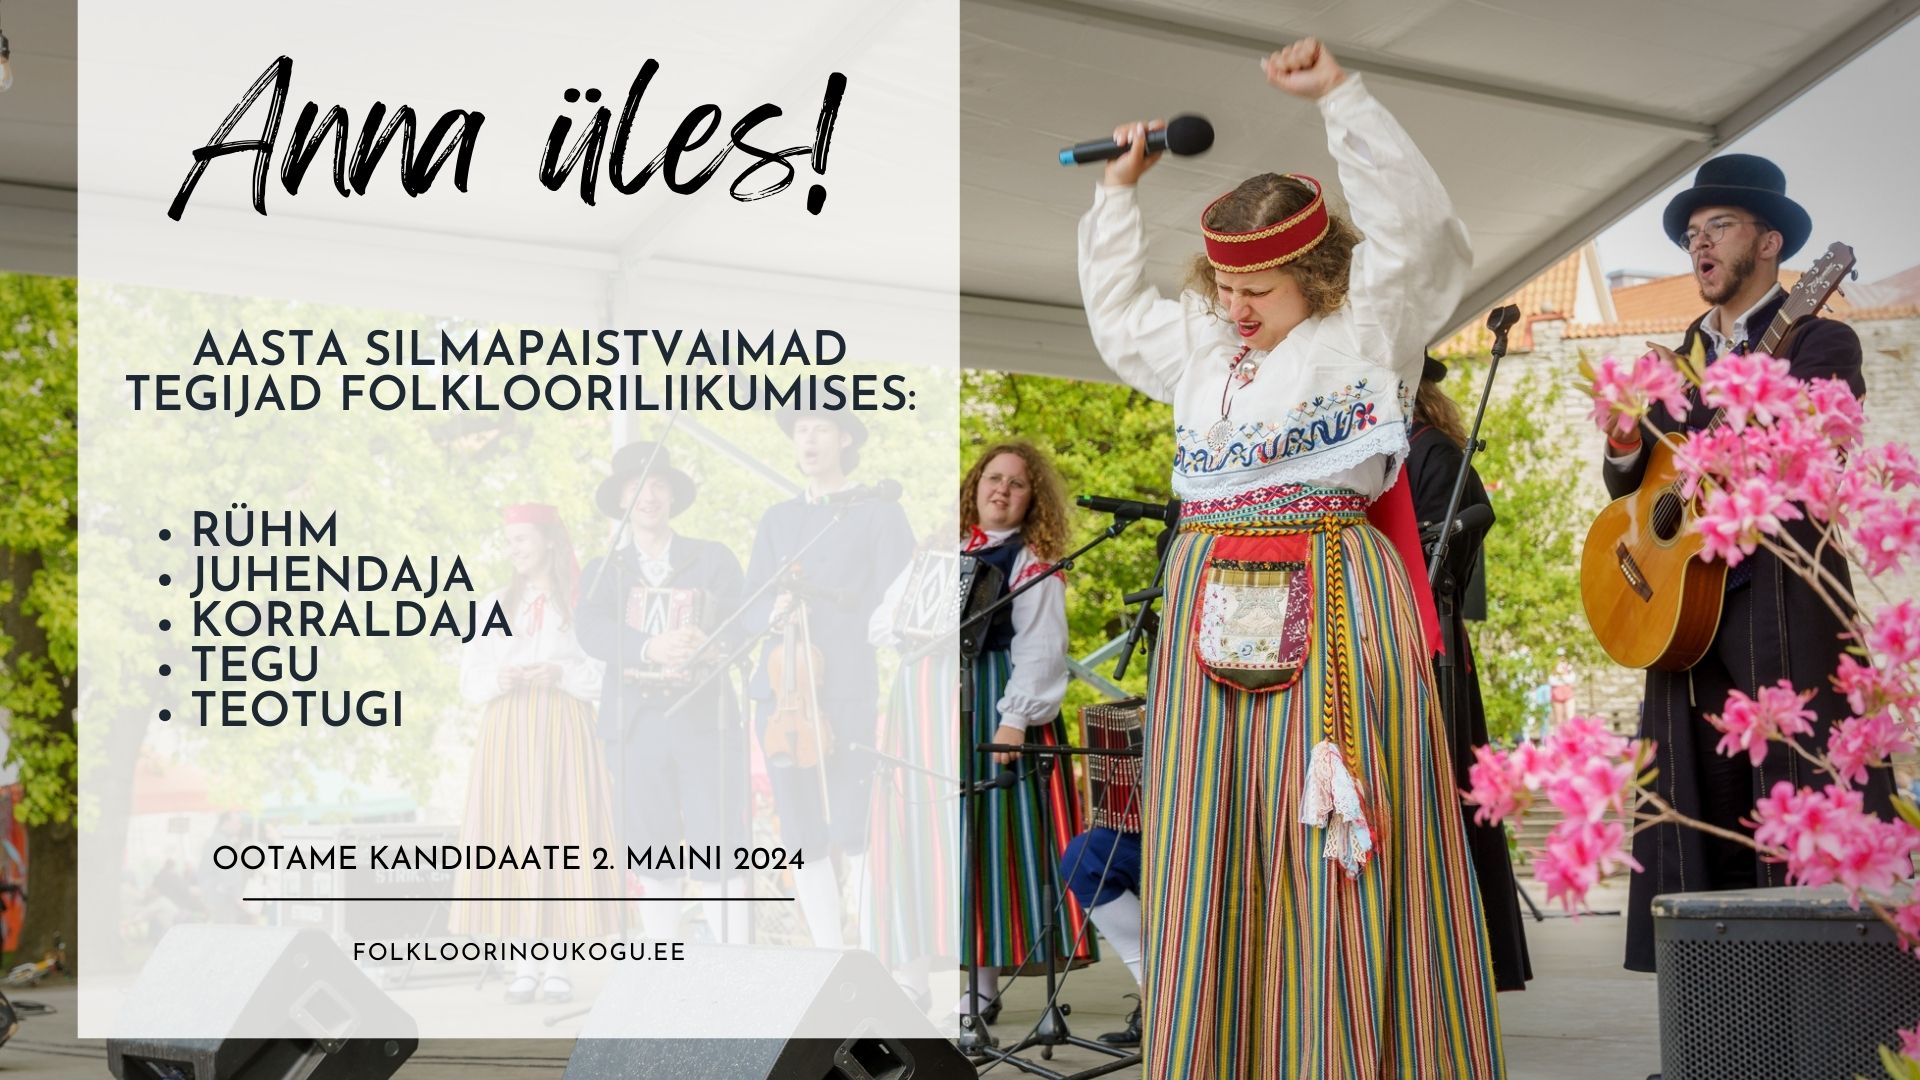 Eesti Folkloorinõukogu ootab 2. maiks kandidaate, et jagada tunnustust isikutele ja kooslustele, kelle teadliku ja sihikindla tegutsemise tulemusena on pärimus